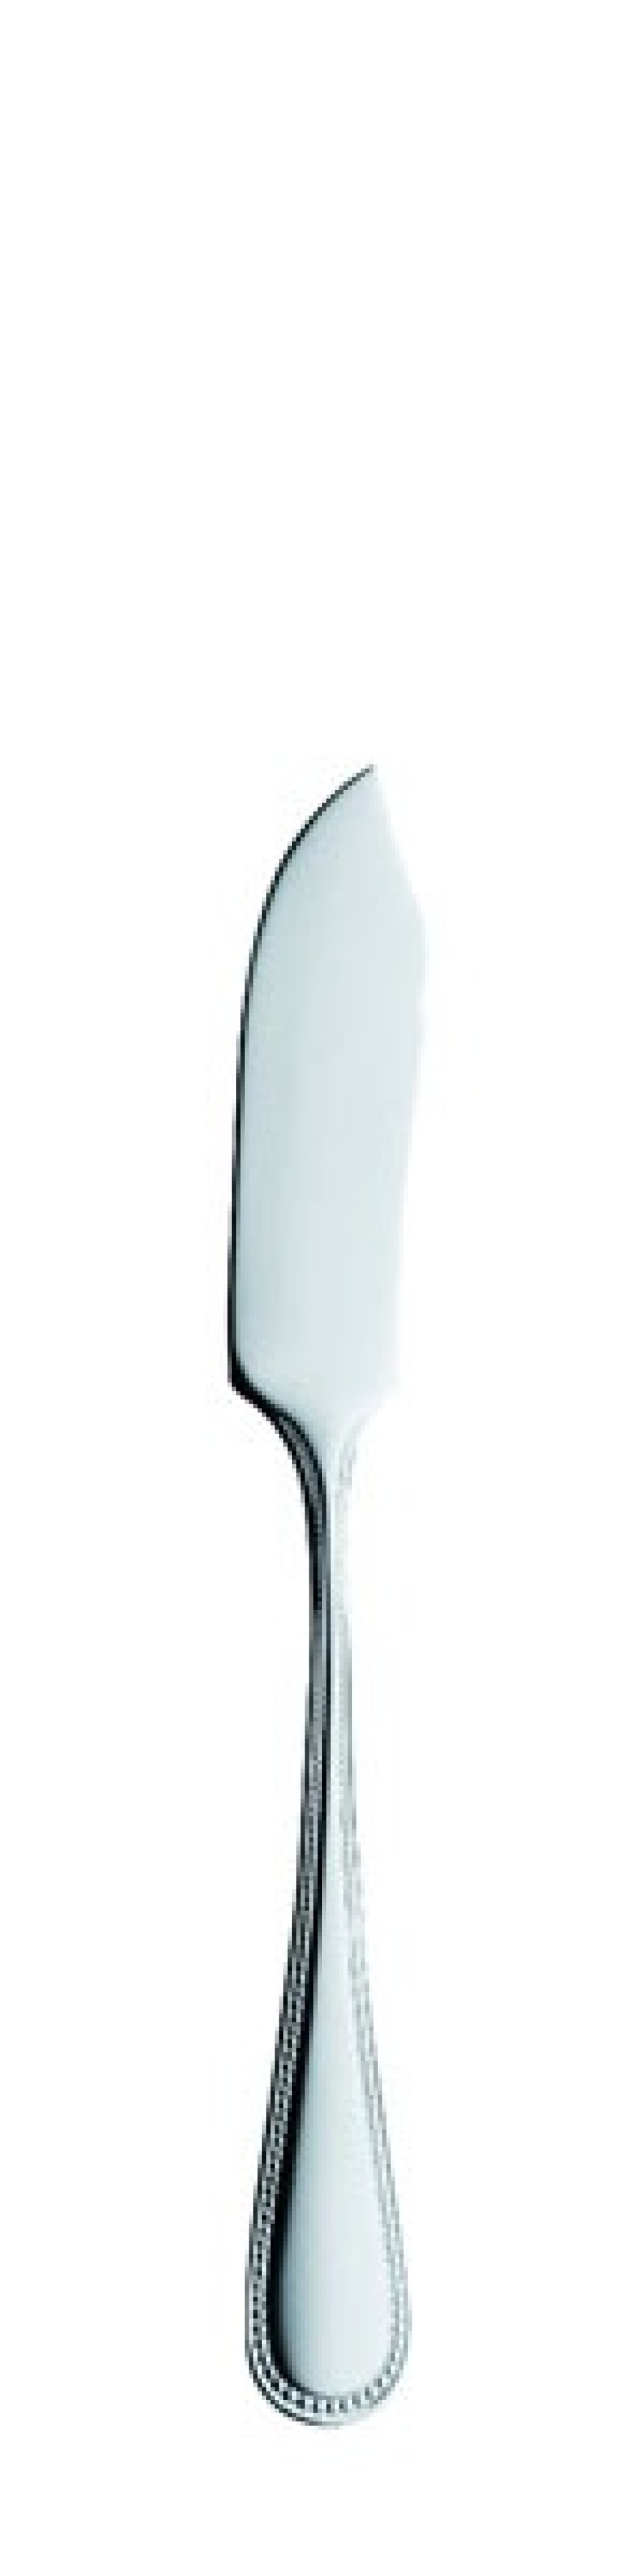 Perle Fischmesser 208 mm - Solex in der Gruppe Tischgedeck / Besteck / Messer bei The Kitchen Lab (1284-21416)